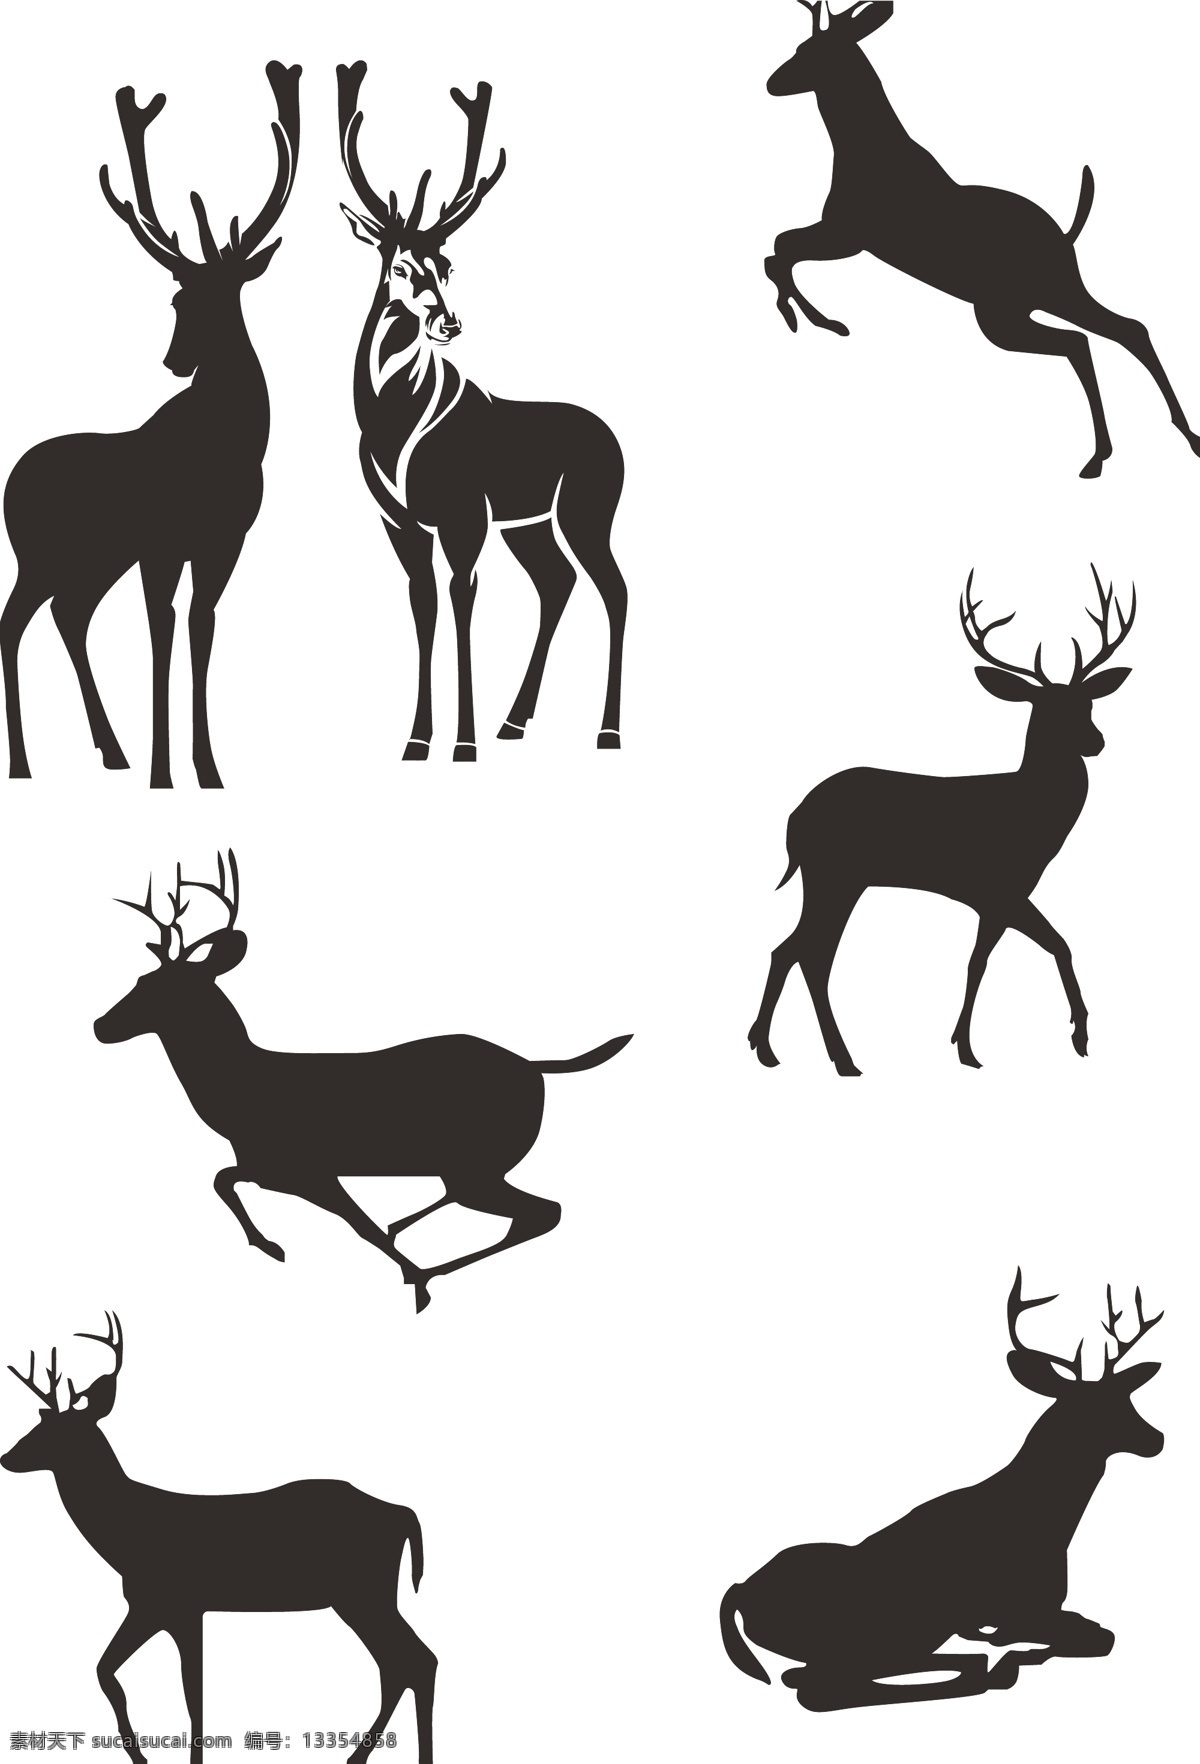 矢量图 矢量麋鹿 剪影 矢量剪影 麋鹿剪影 小鹿 飞奔的麋鹿 睡着的麋鹿 形态各异麋鹿